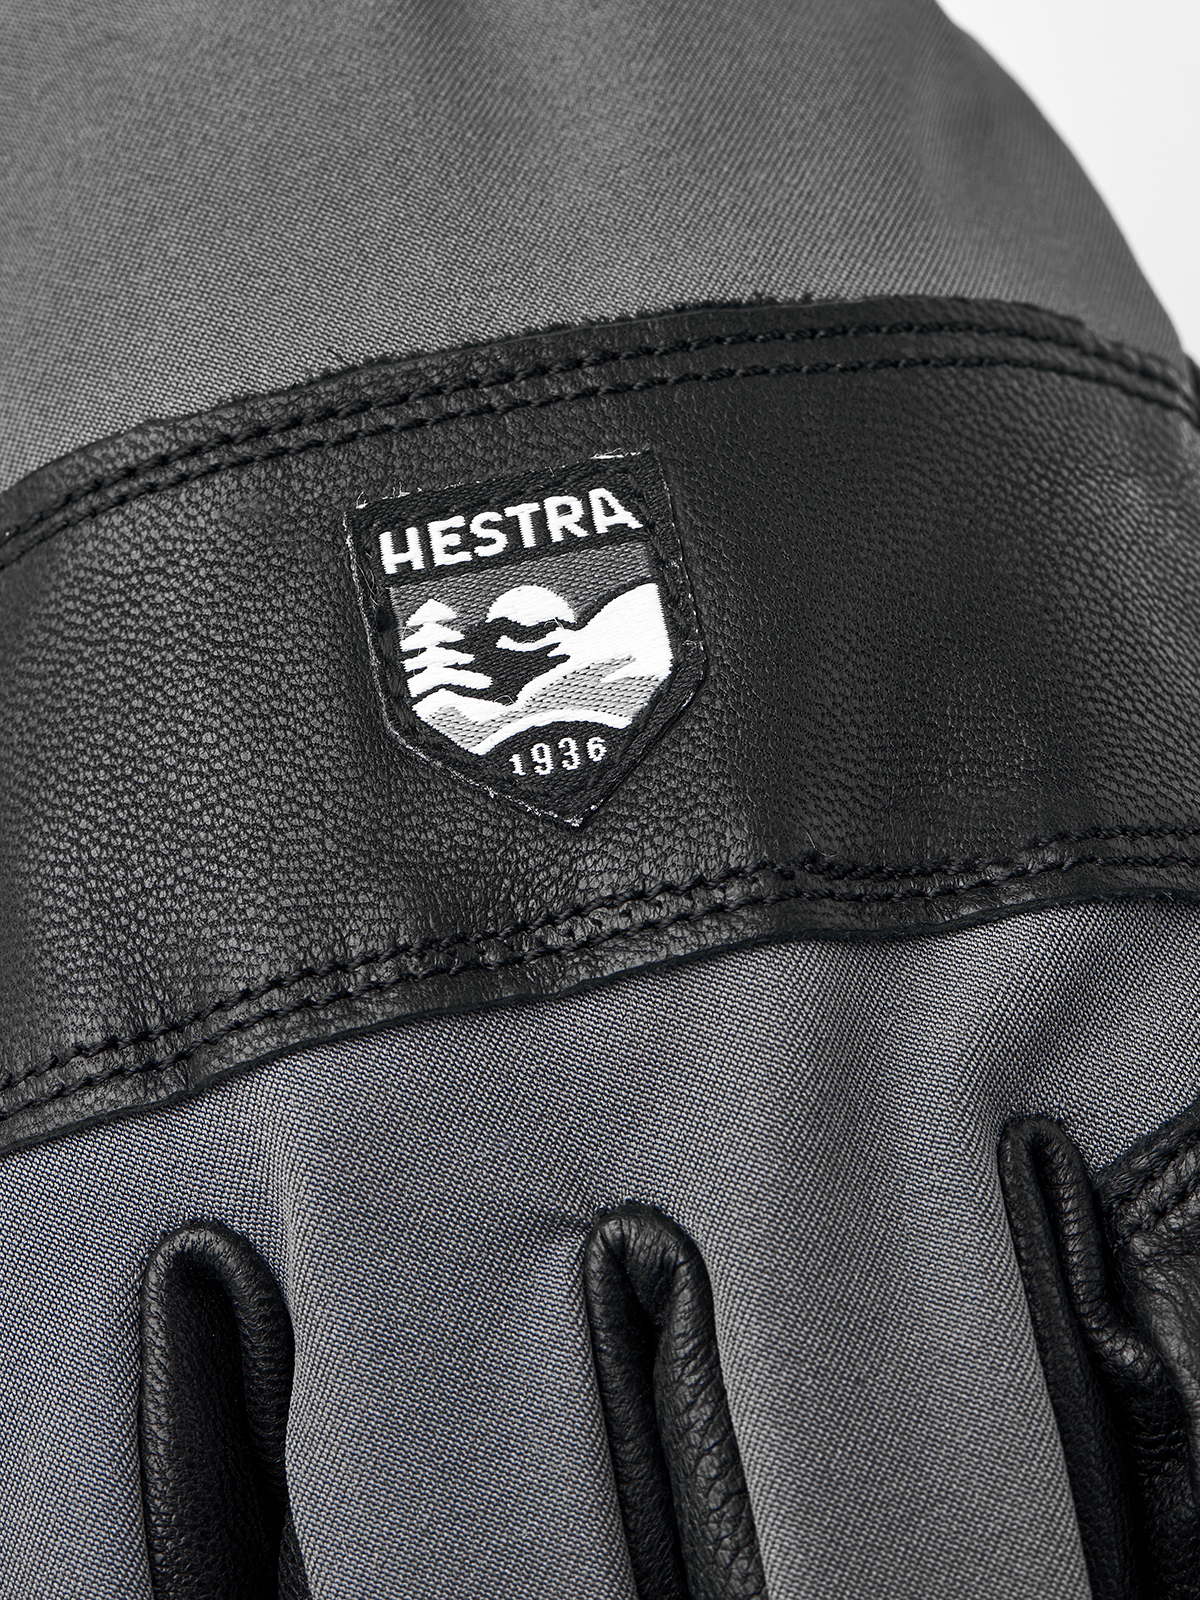 Hestra Vernum Spring GlovesSki & Snowboard31550 